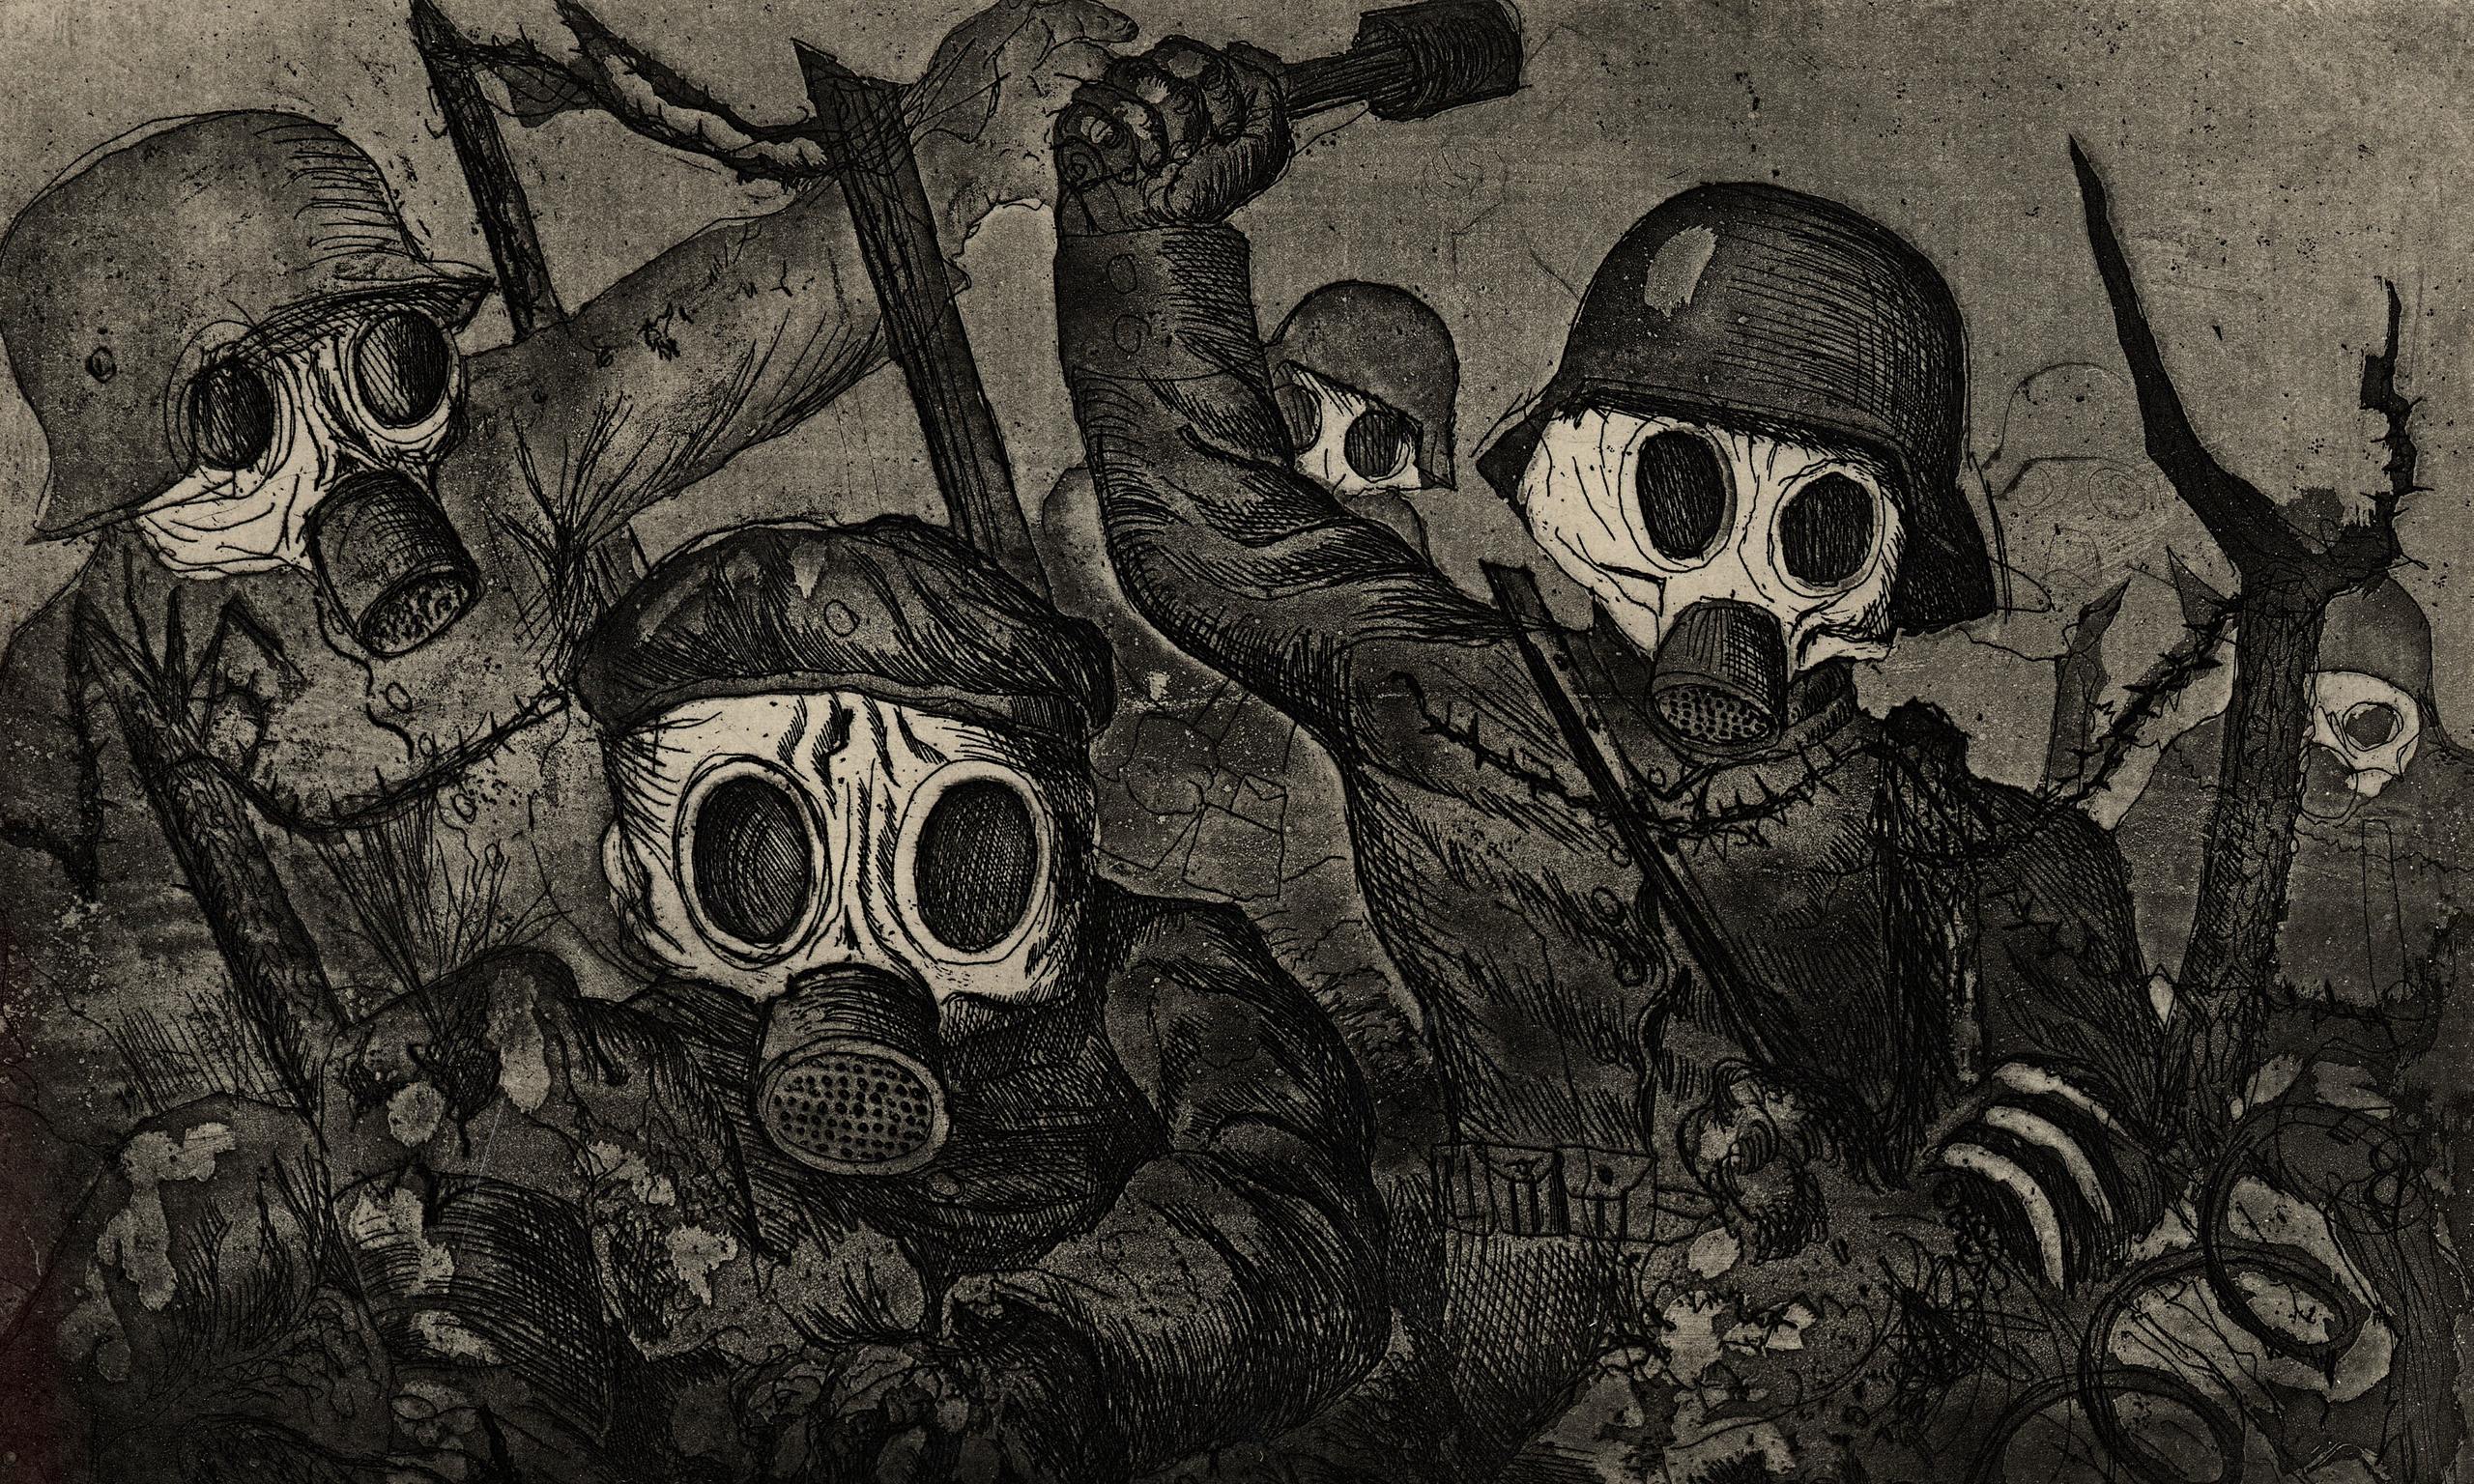 Darbe Birlikleri Gaz Altında İlerliyor by Otto Dix - 1924 - 19.3 x 28.8 cm Museum of Modern Art